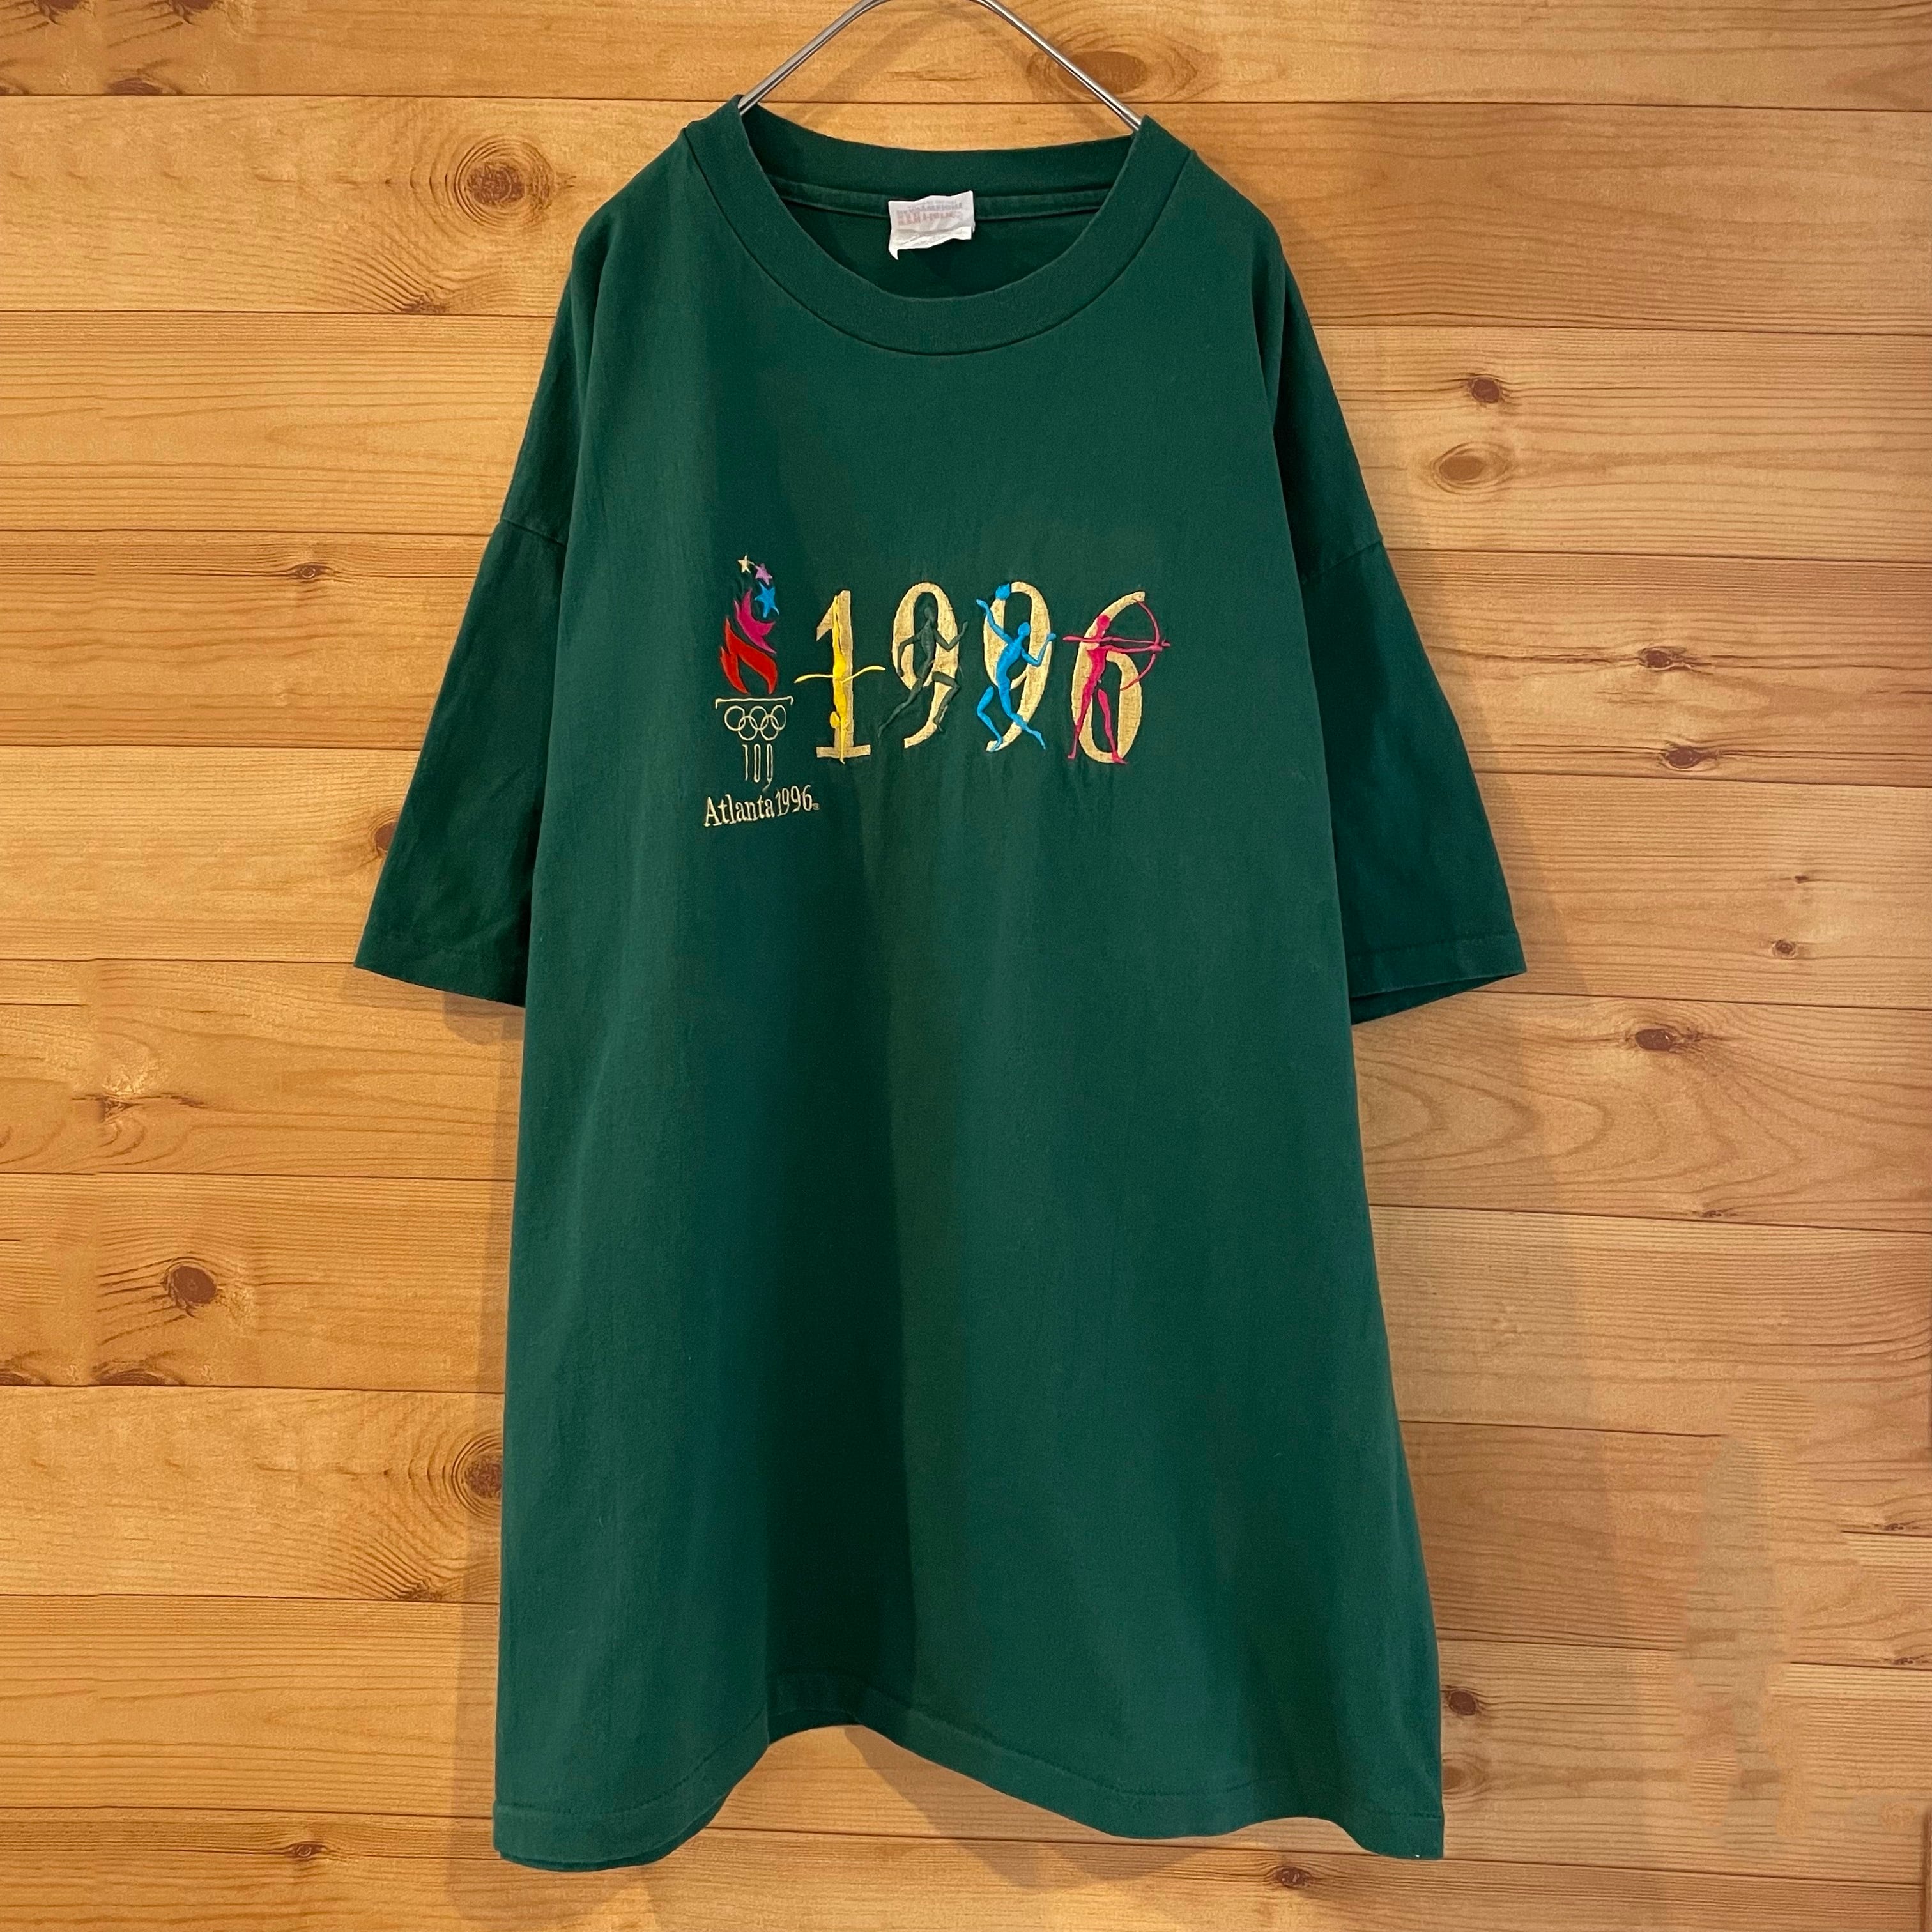 90s アトランタオリンピック 刺繍 マウンテンパーカー バイカラー  緑